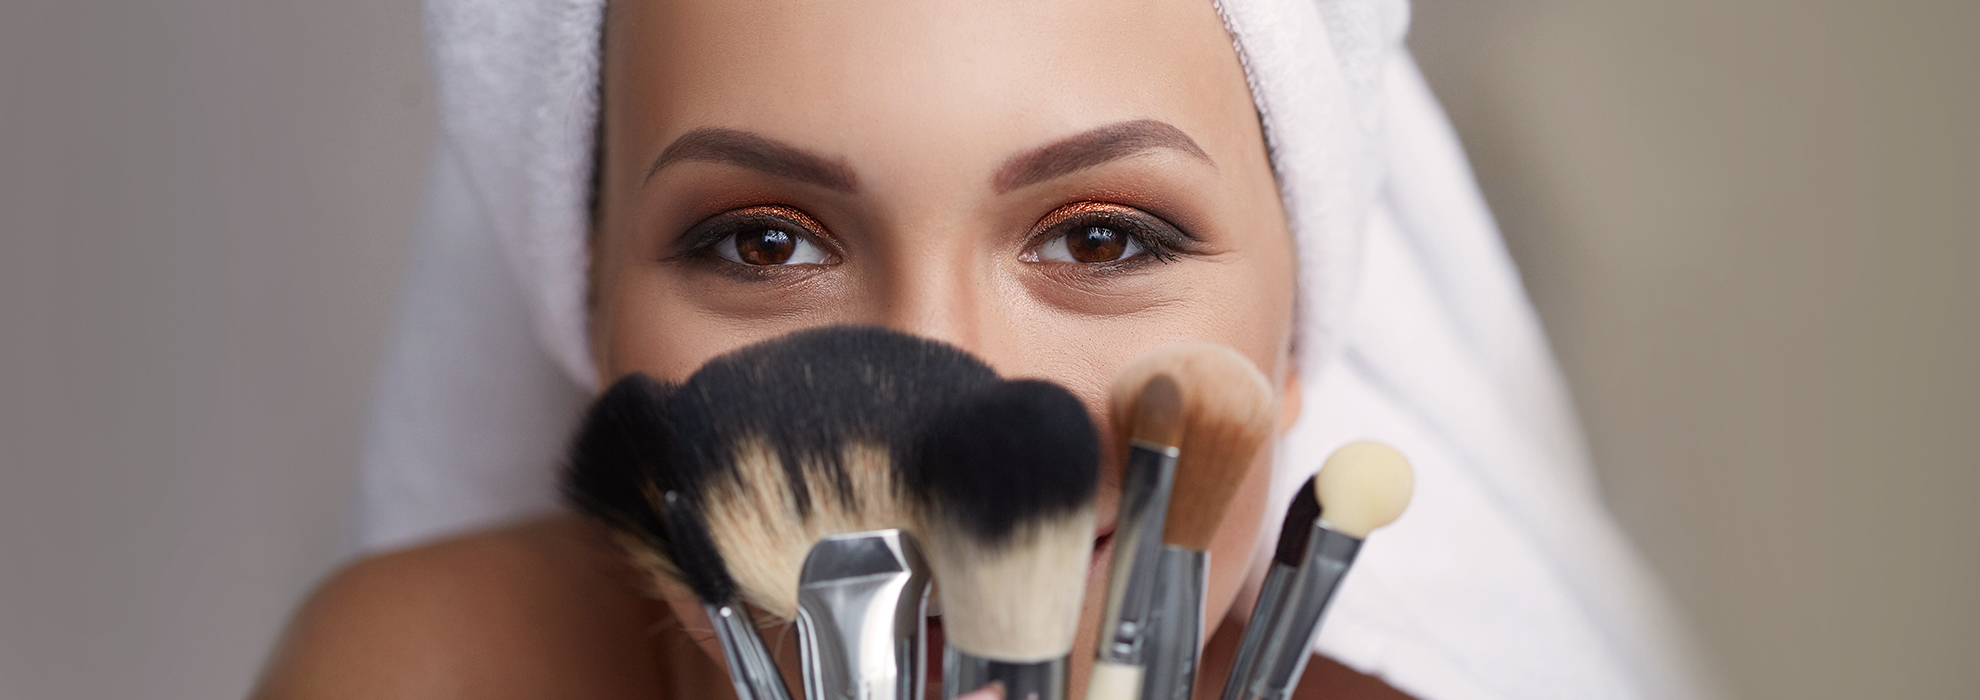 Come usare i pennelli da trucco per il make up di viso, occhi e labbra